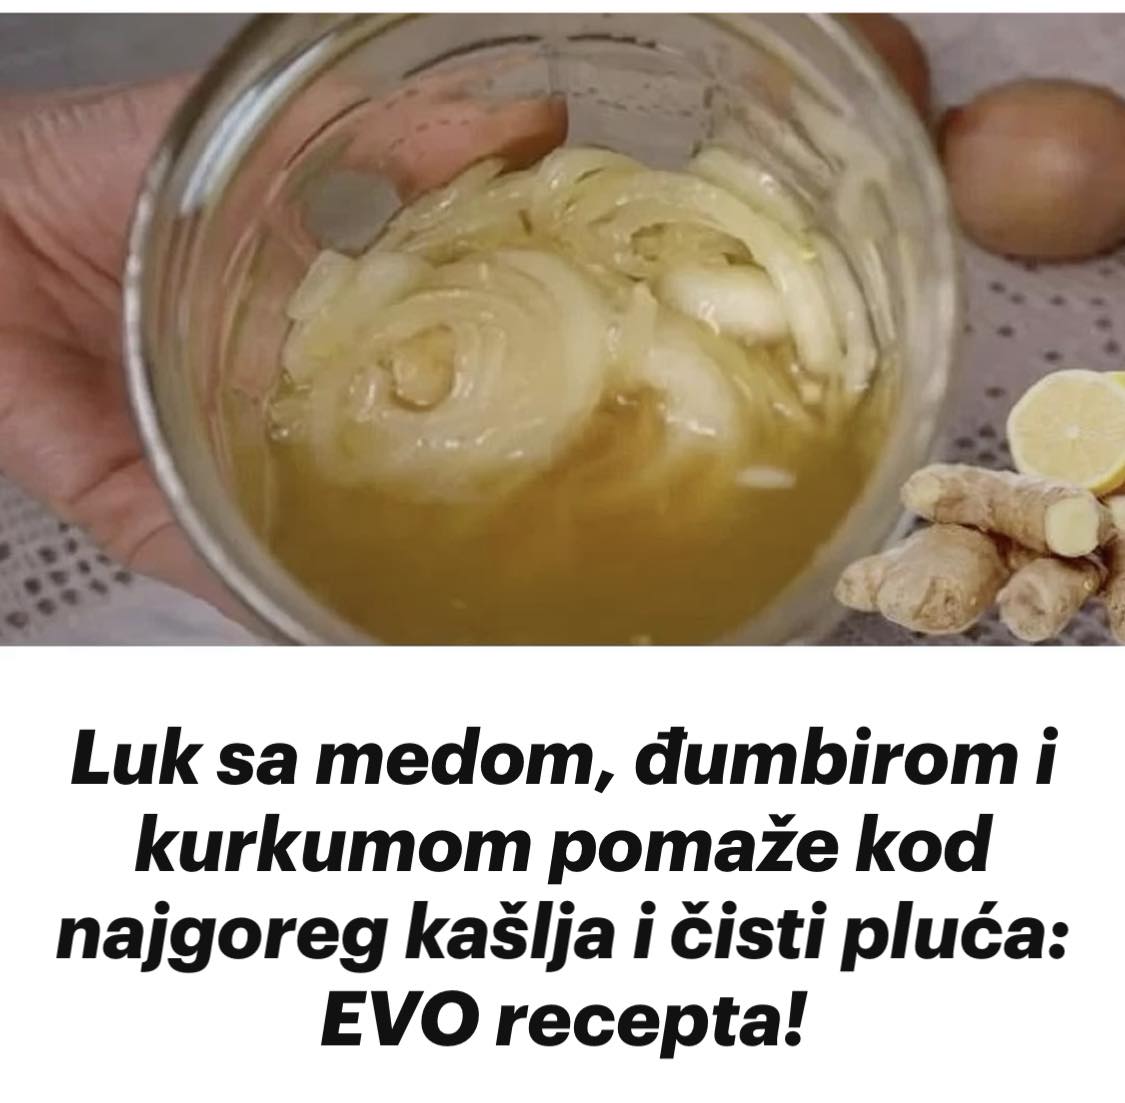 Luk sa medom, đumbirom i kurkumom pomaže kod najgoreg kašlja i čisti pluća: EVO recepta!